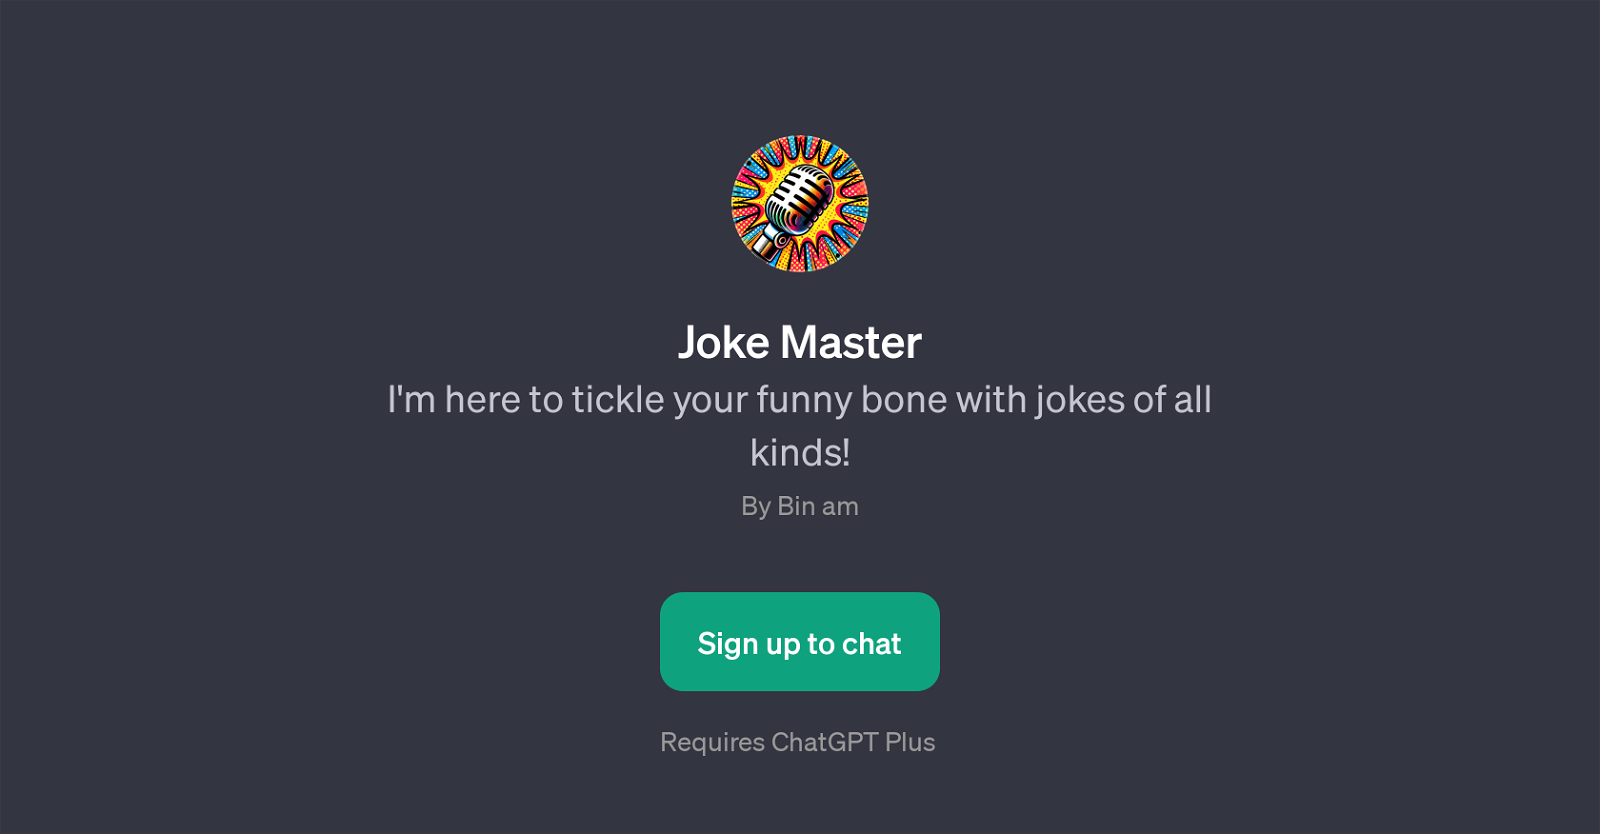 Joke Master website